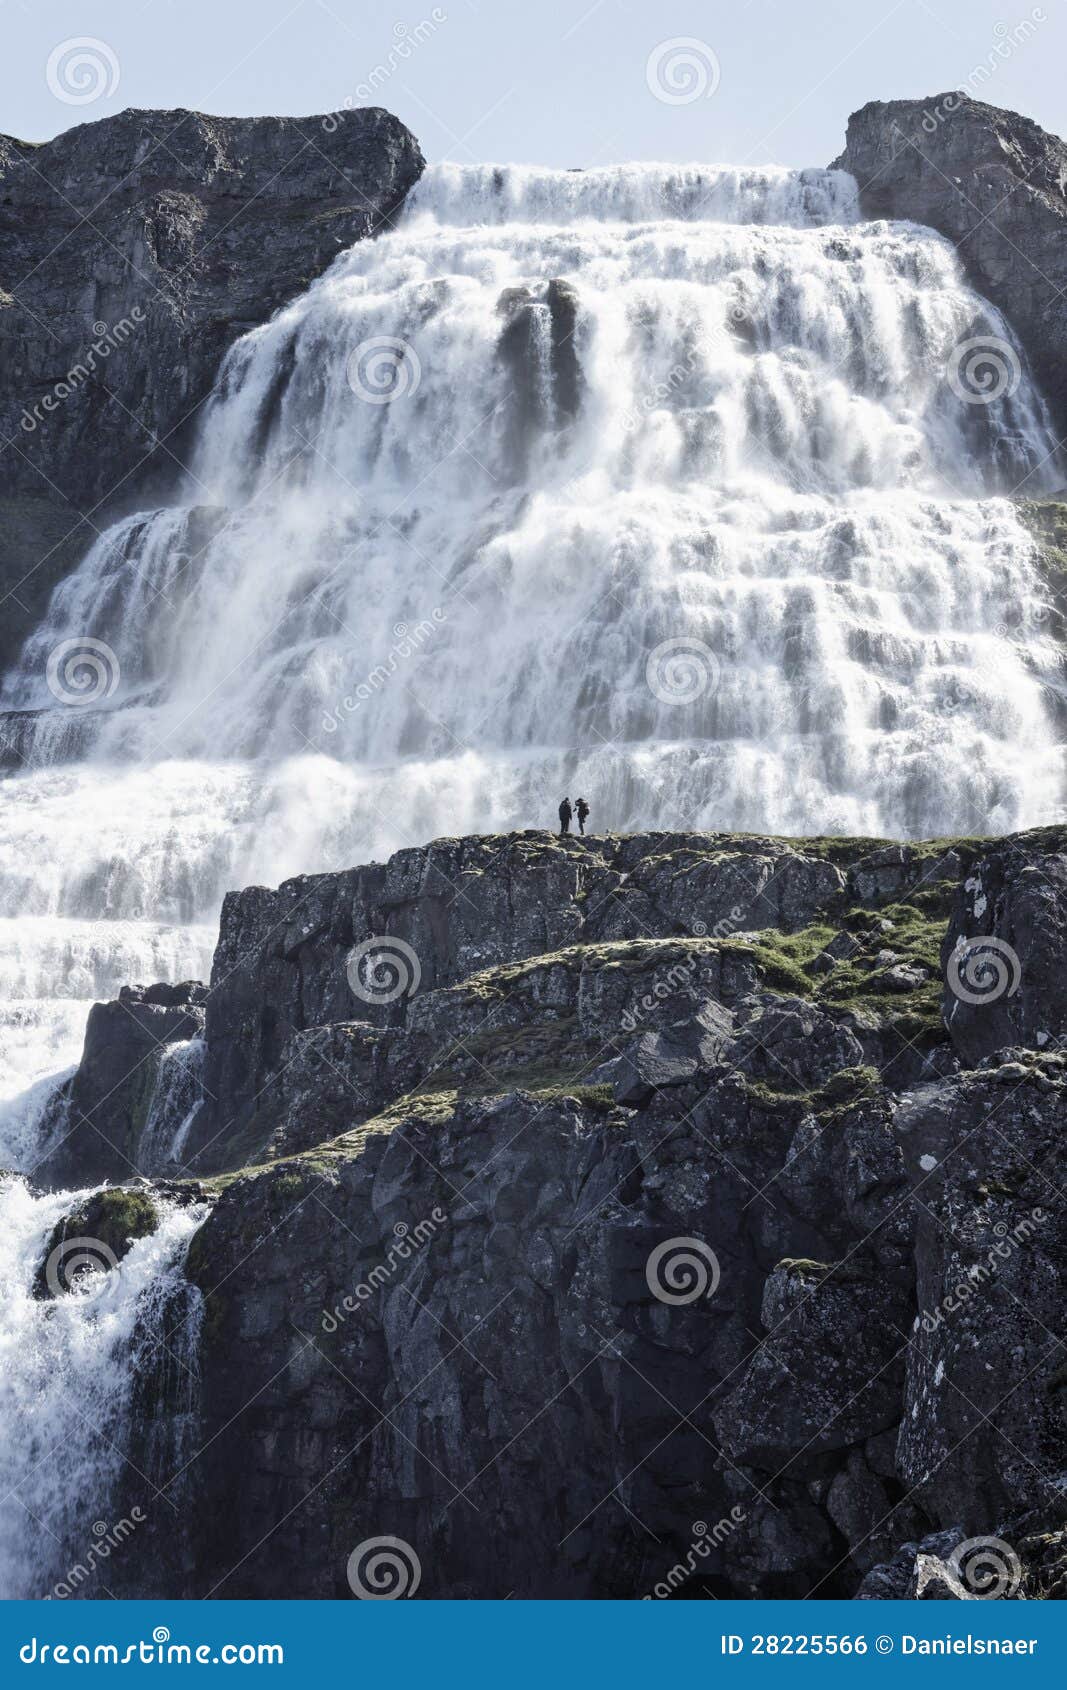 Epischer Wasserfall Dynjandi. Dynjandi ist ein epischer Wasserfall in den westfjords von Island.